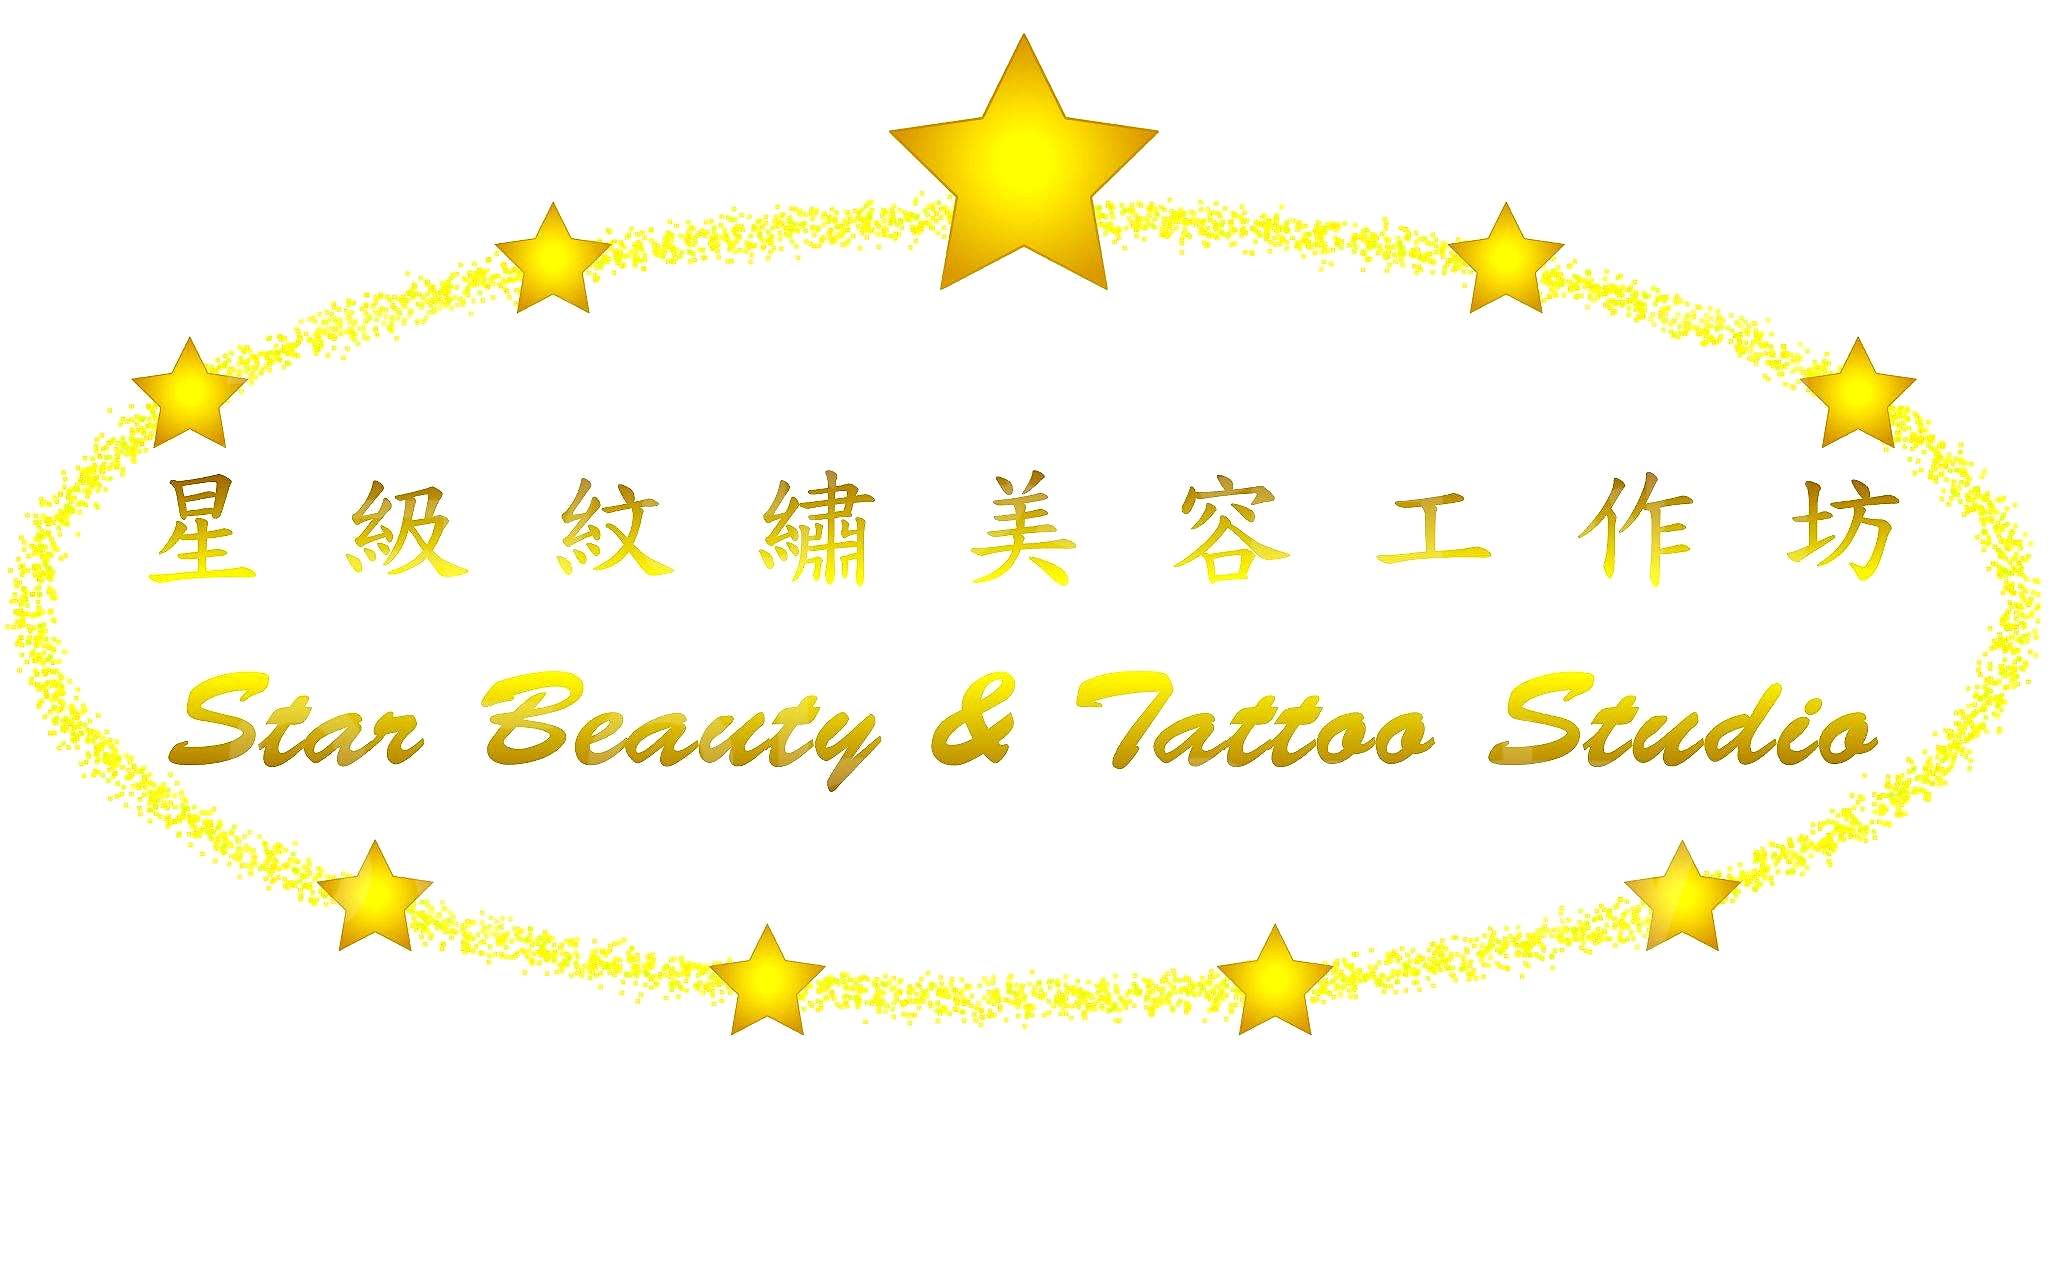 : Star Beauty & Tattoo Studio